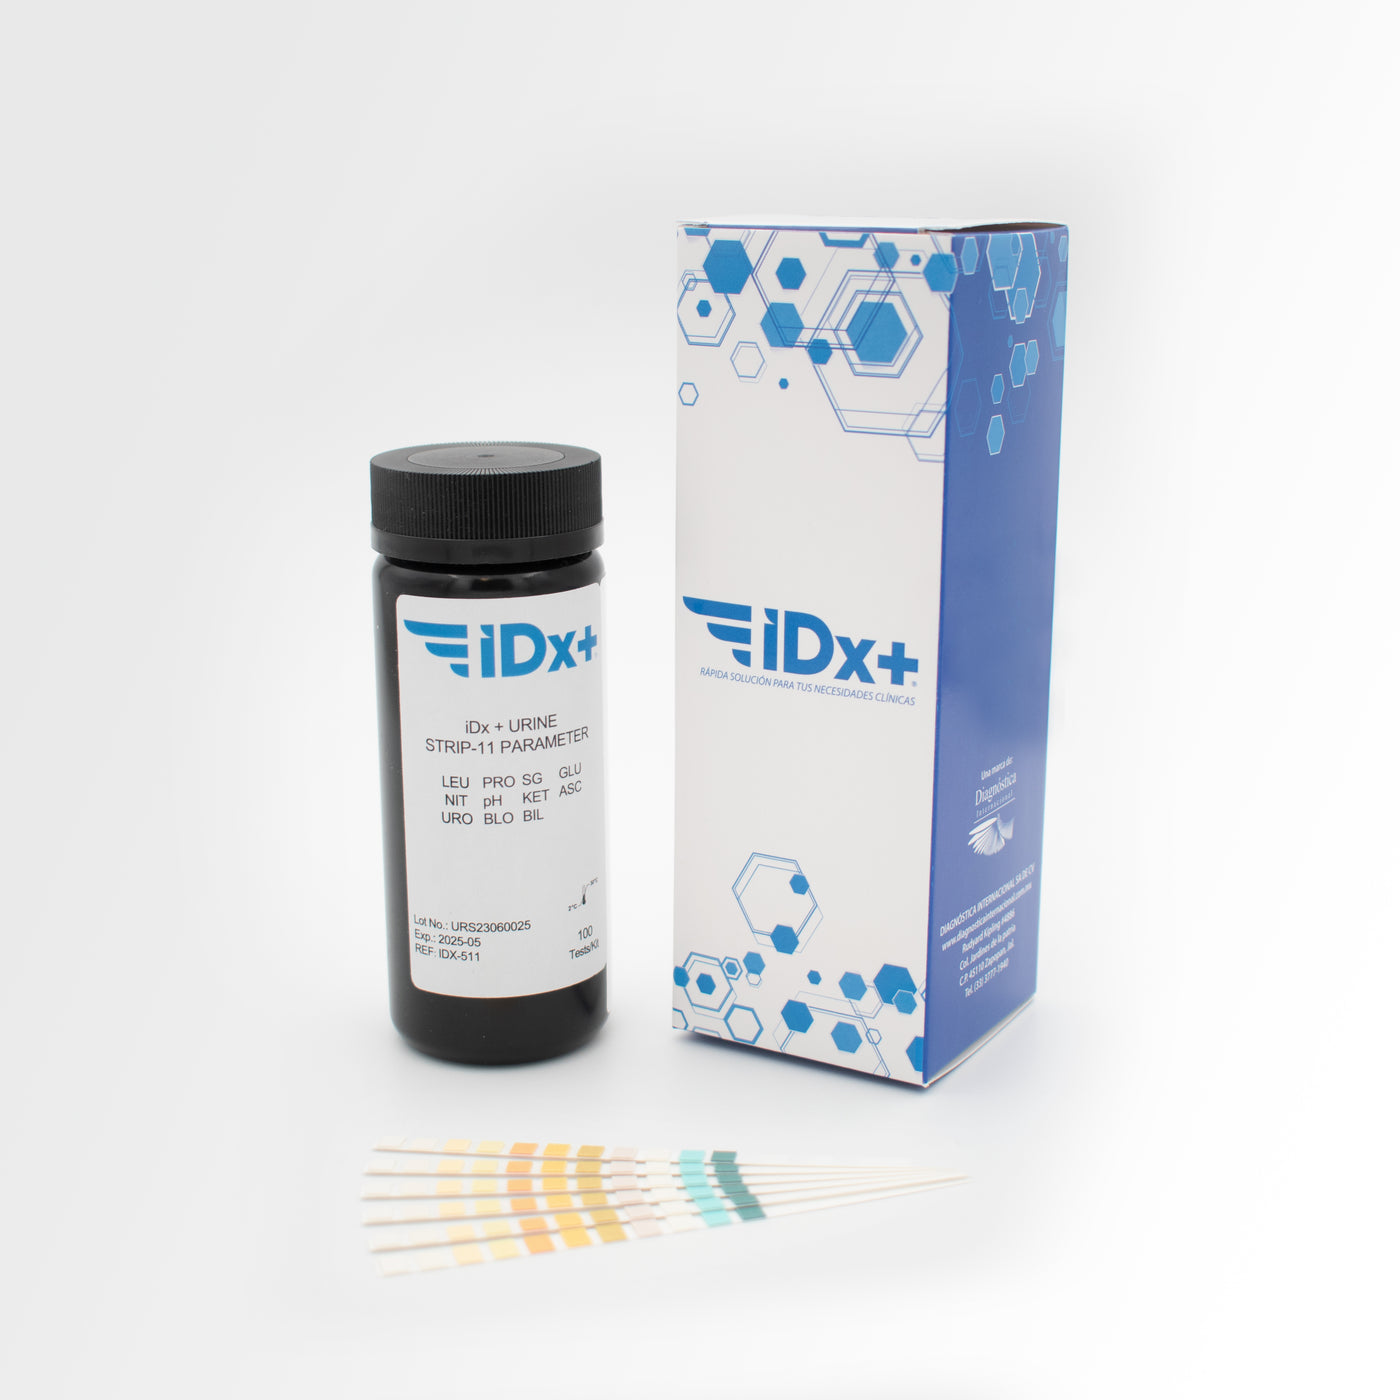 iDx + Urine Strip- 11 parameter